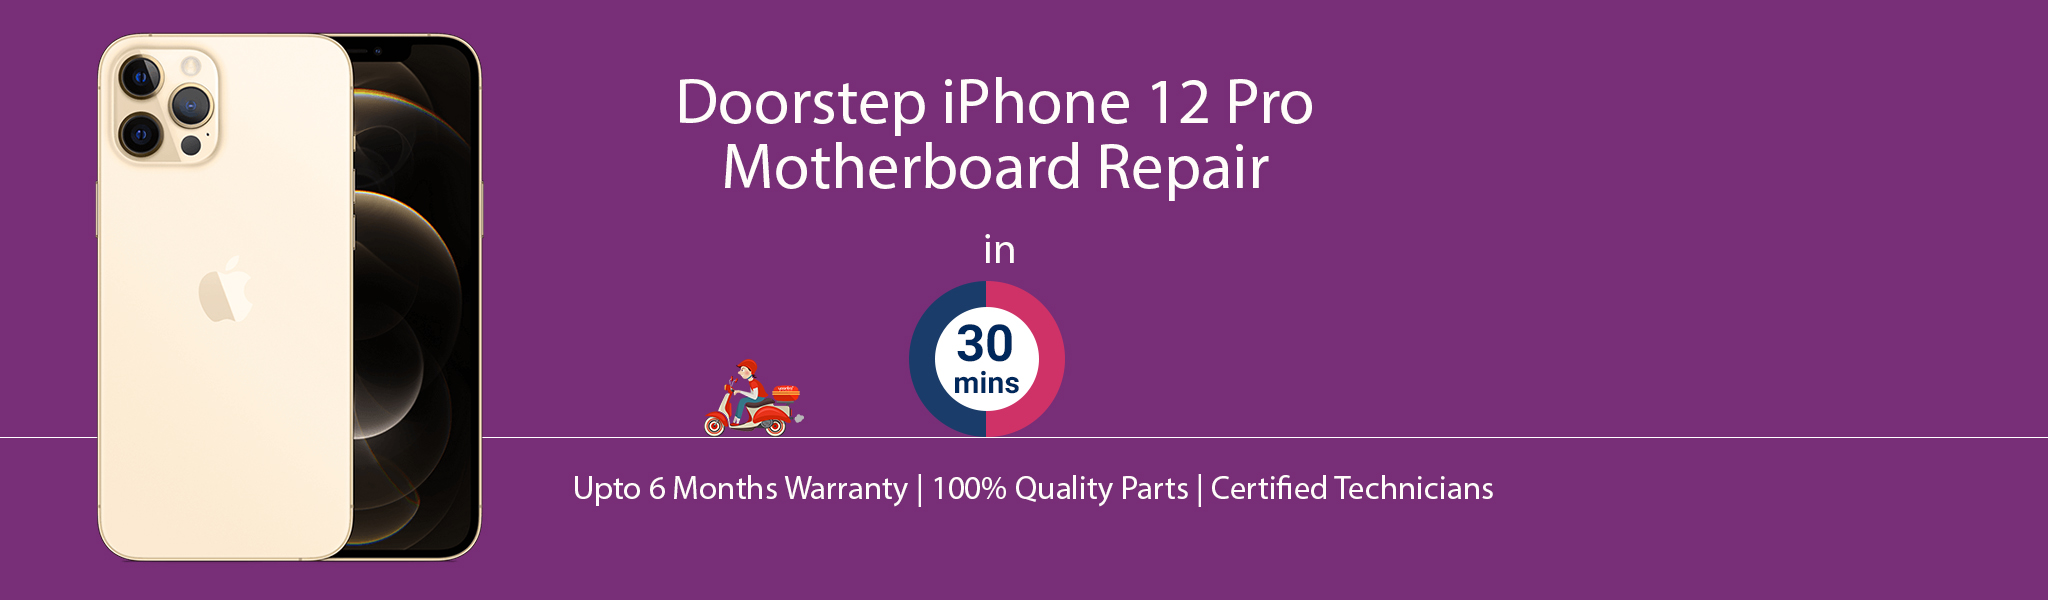 iphone-12-pro-motherboard-repair.jpg